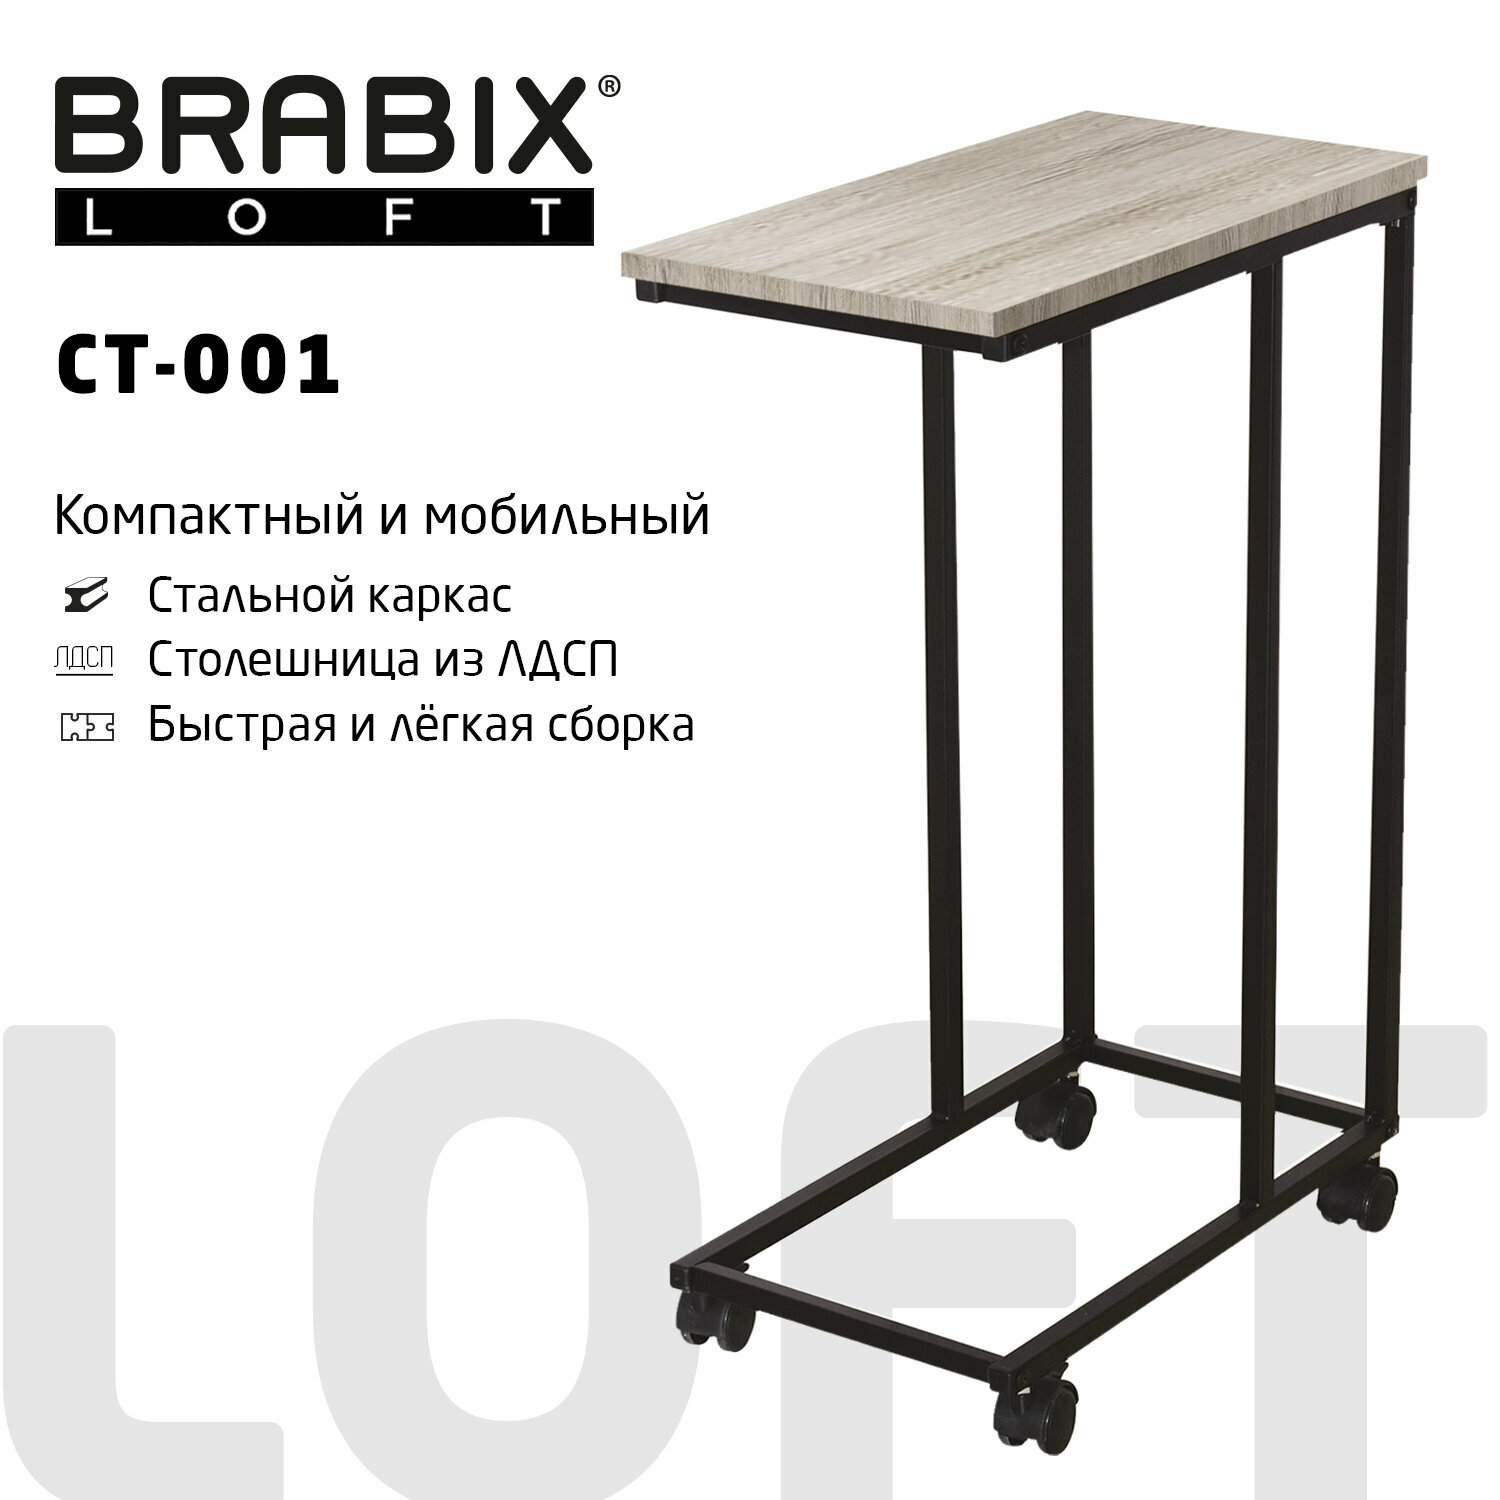 Стол журнальный на металлокаркасе Brabix Loft Ct-001 457х380х685 мм